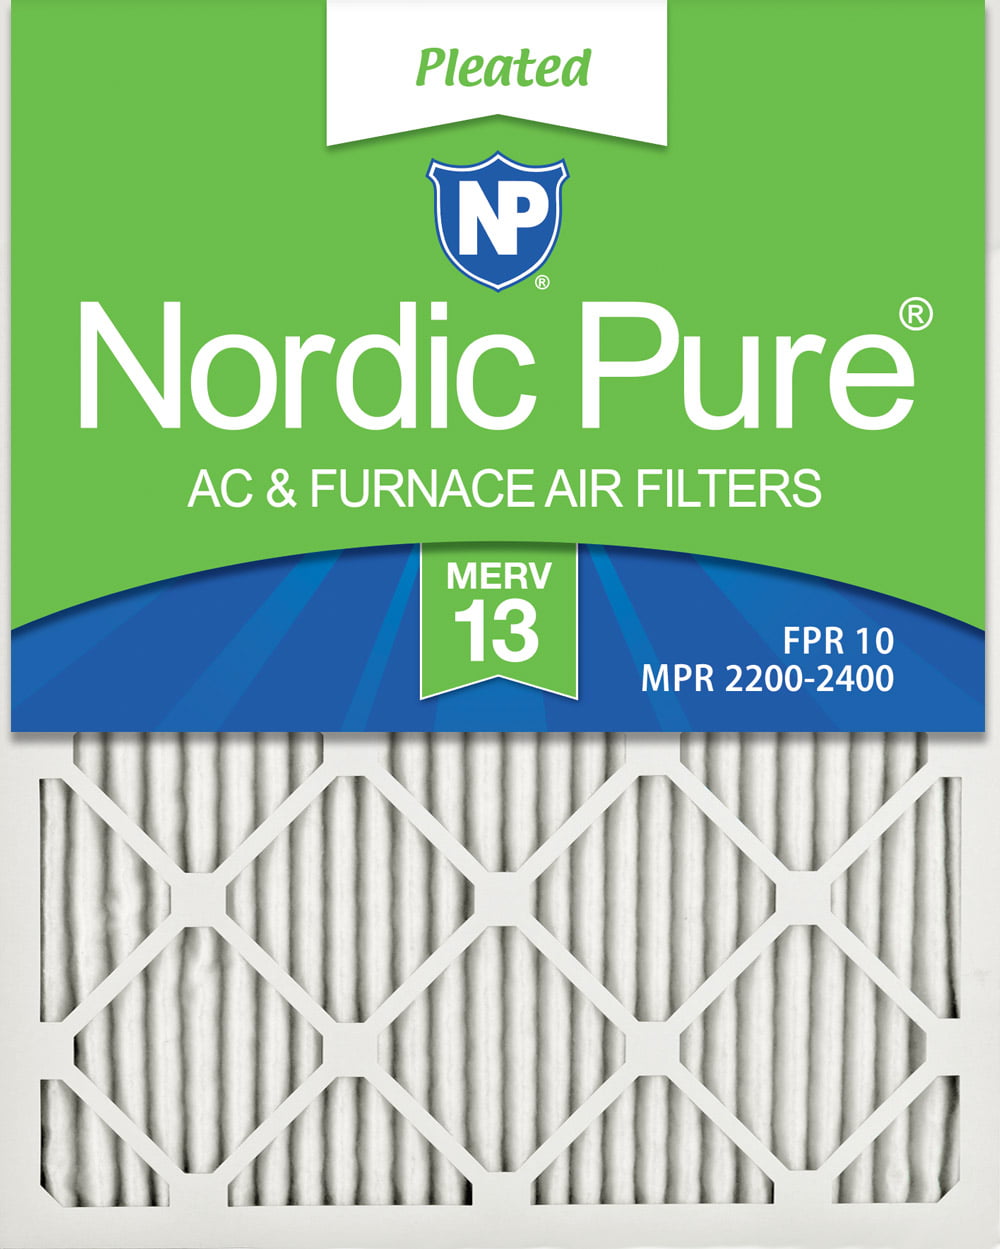 Nordic Pure 20x22x1 MERV 12 Tru Mini Pleat AC Furnace Air Filters 2 Pack 